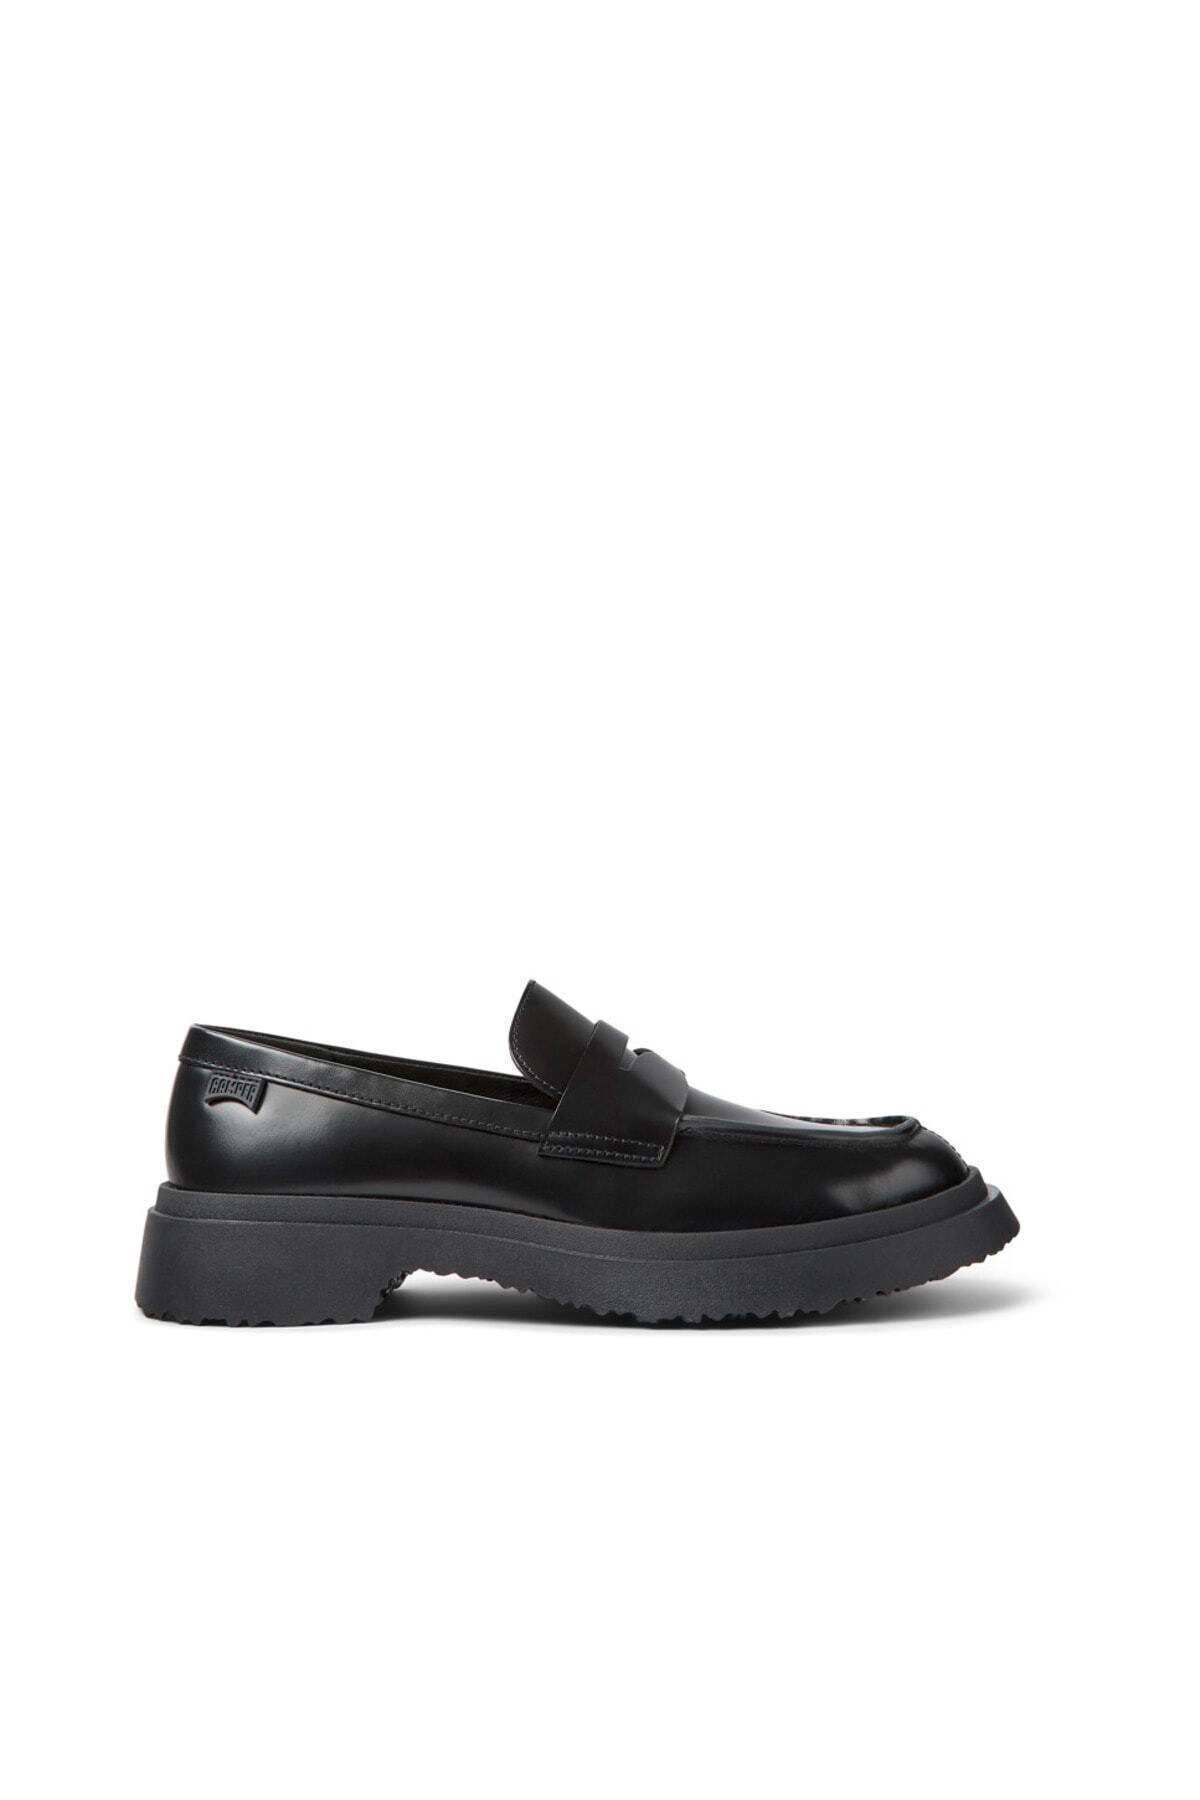 CAMPER Kadın Siyah Casual Ayakkabı K201116-019